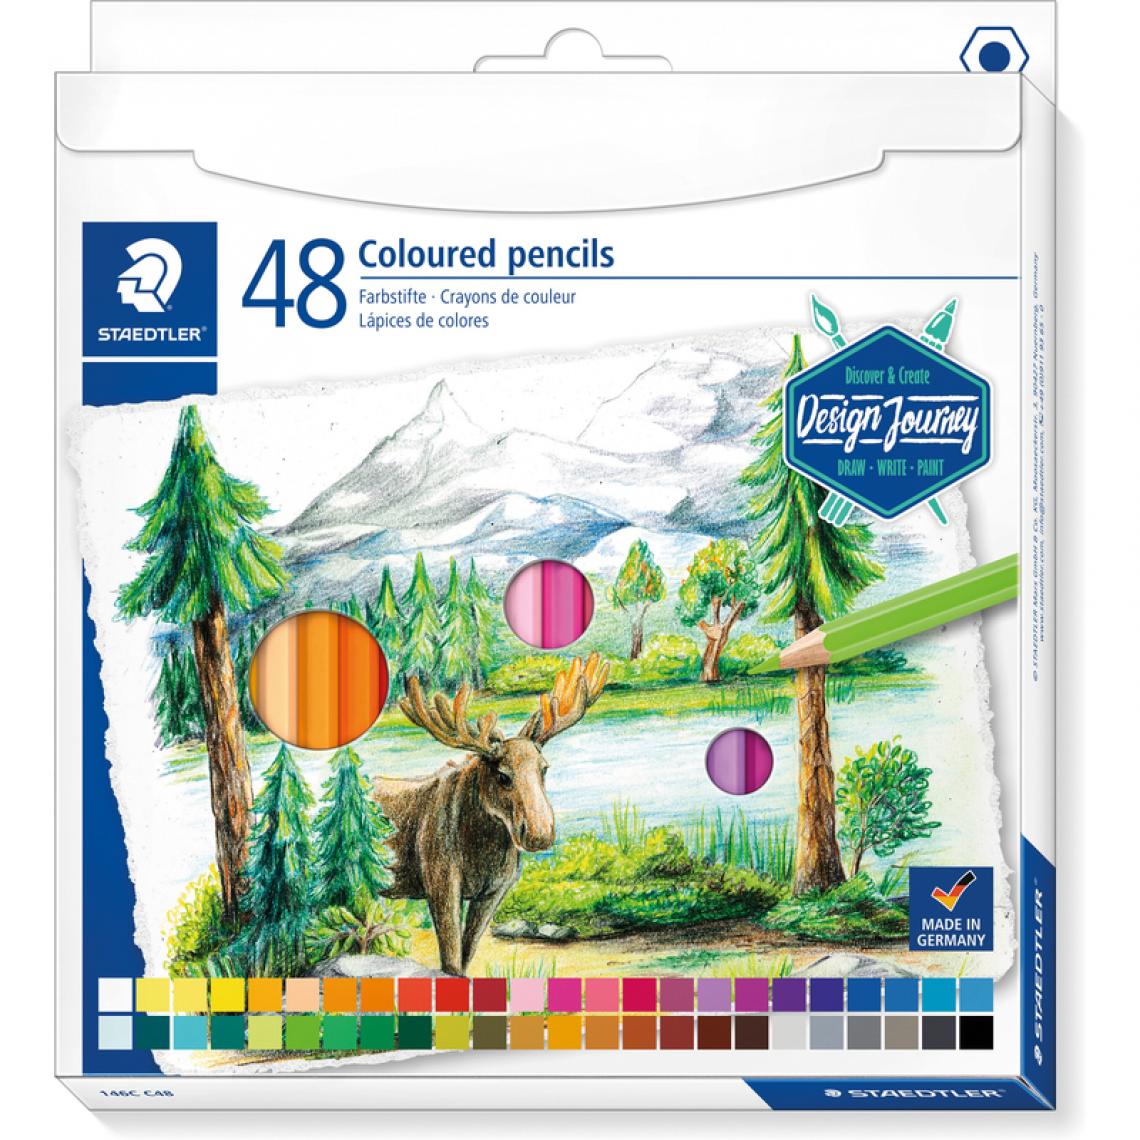 Staedtler - STAEDTLER Crayon couleur Design Journey, étui carton de 48 () - Bricolage et jardinage